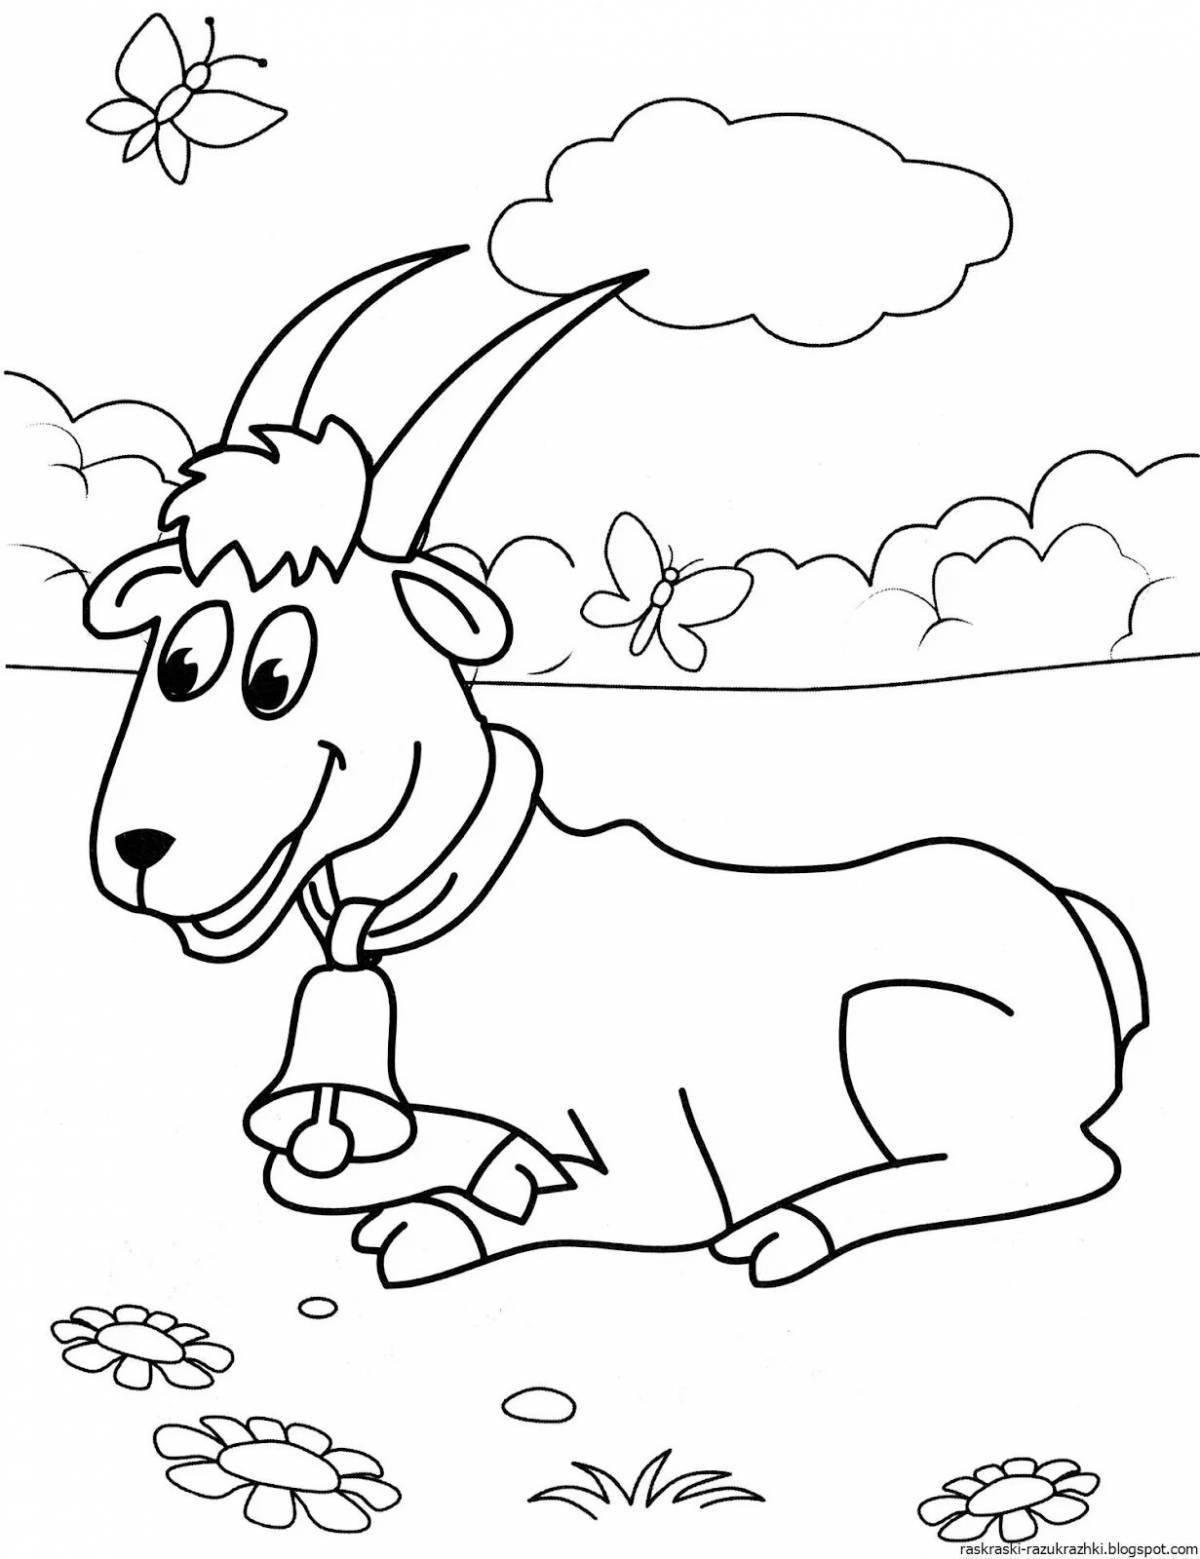 Раскраска милая коза для детей